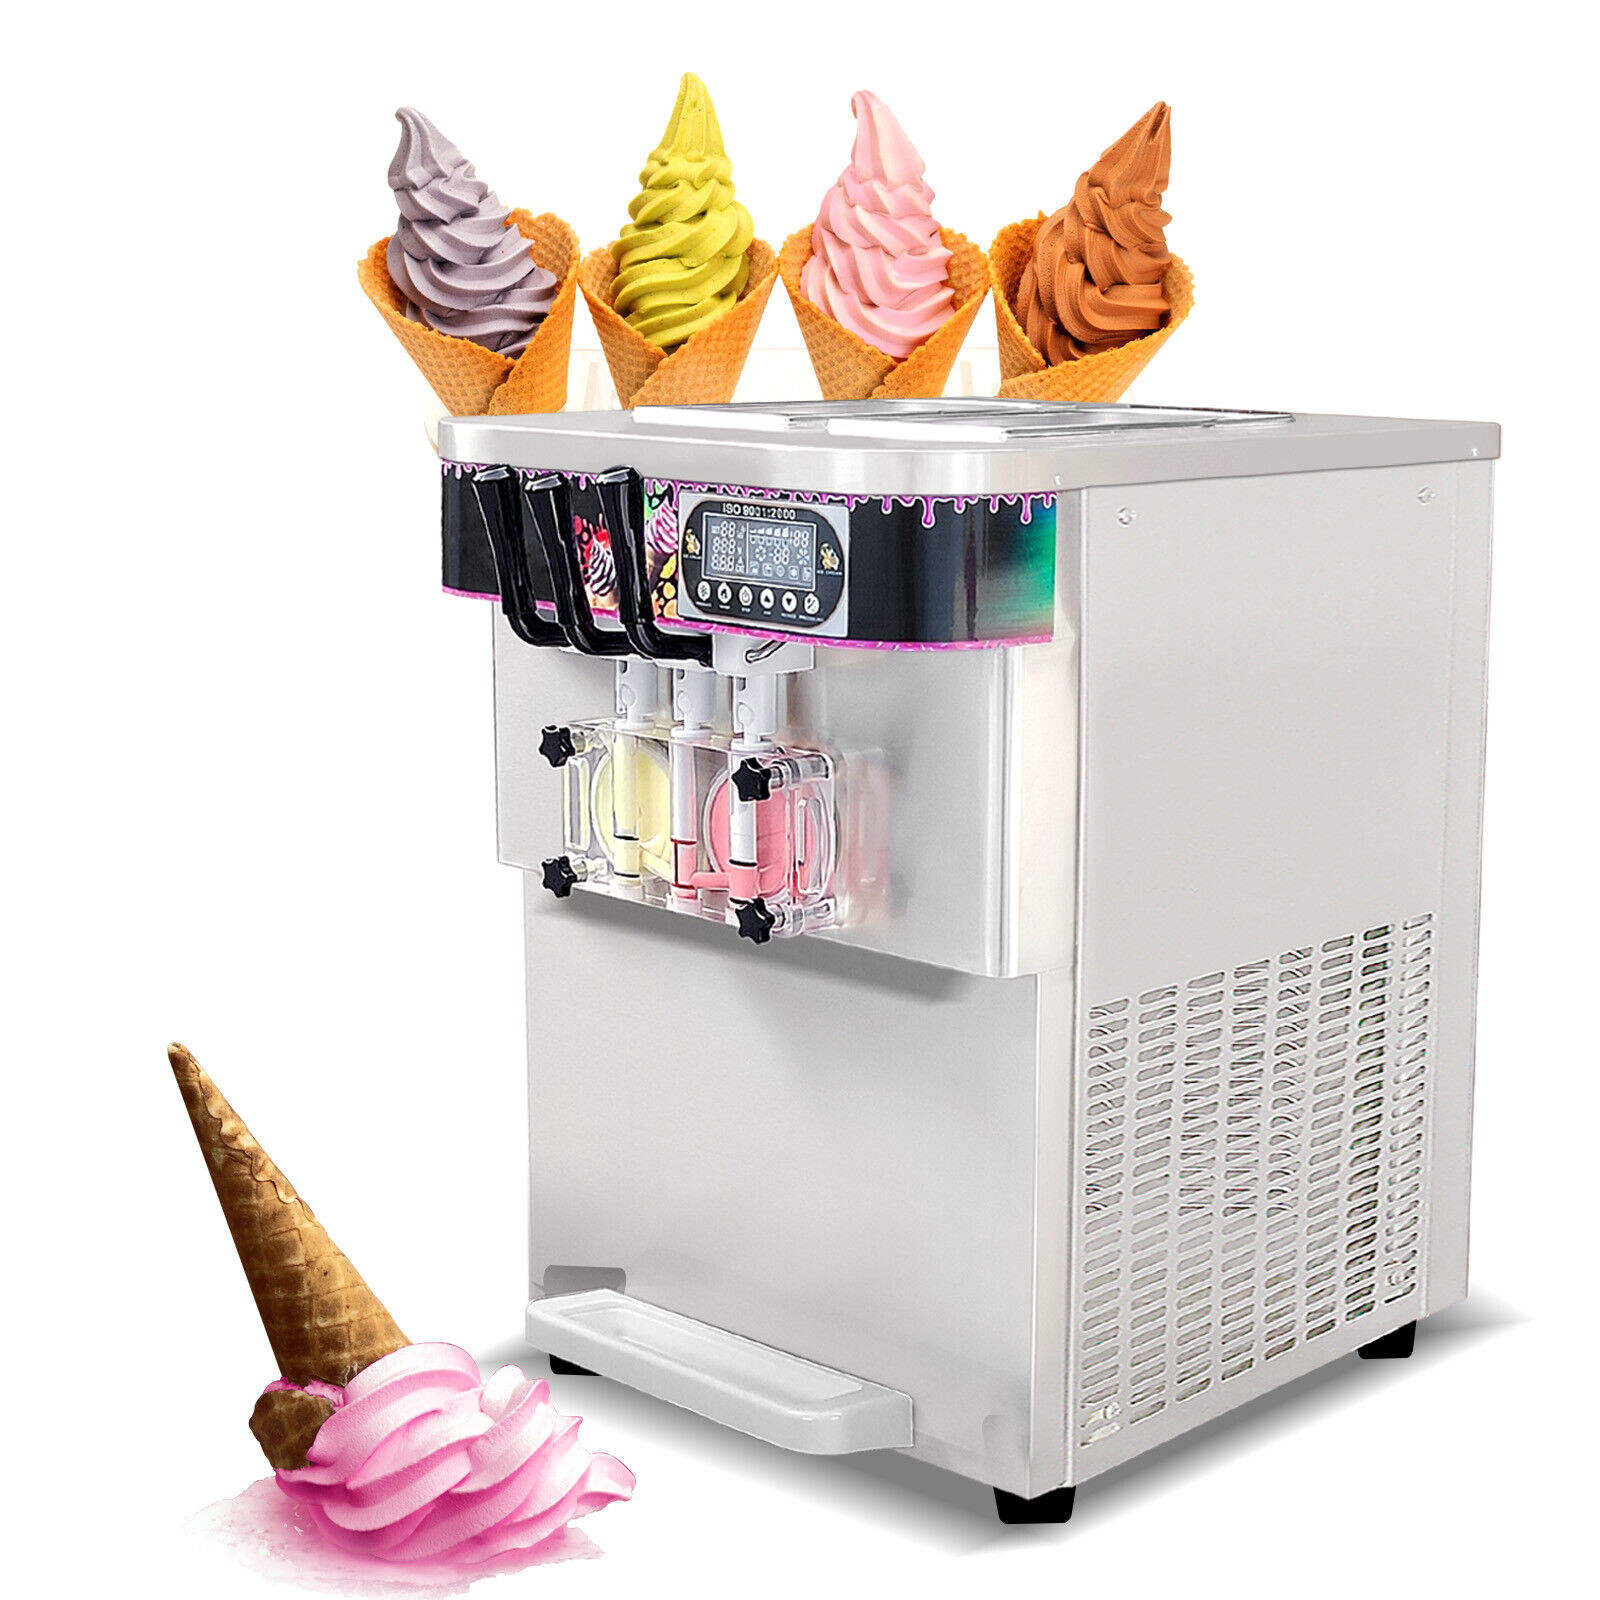 Ice Cream Manufacturers Icecream Machine 110 V 60 Hz 3 Flavors Soft Ice Cream Maker Chinese Good Humor Ice Cream Machine Maker Commercial - Soft Ice Cream Machine - 1